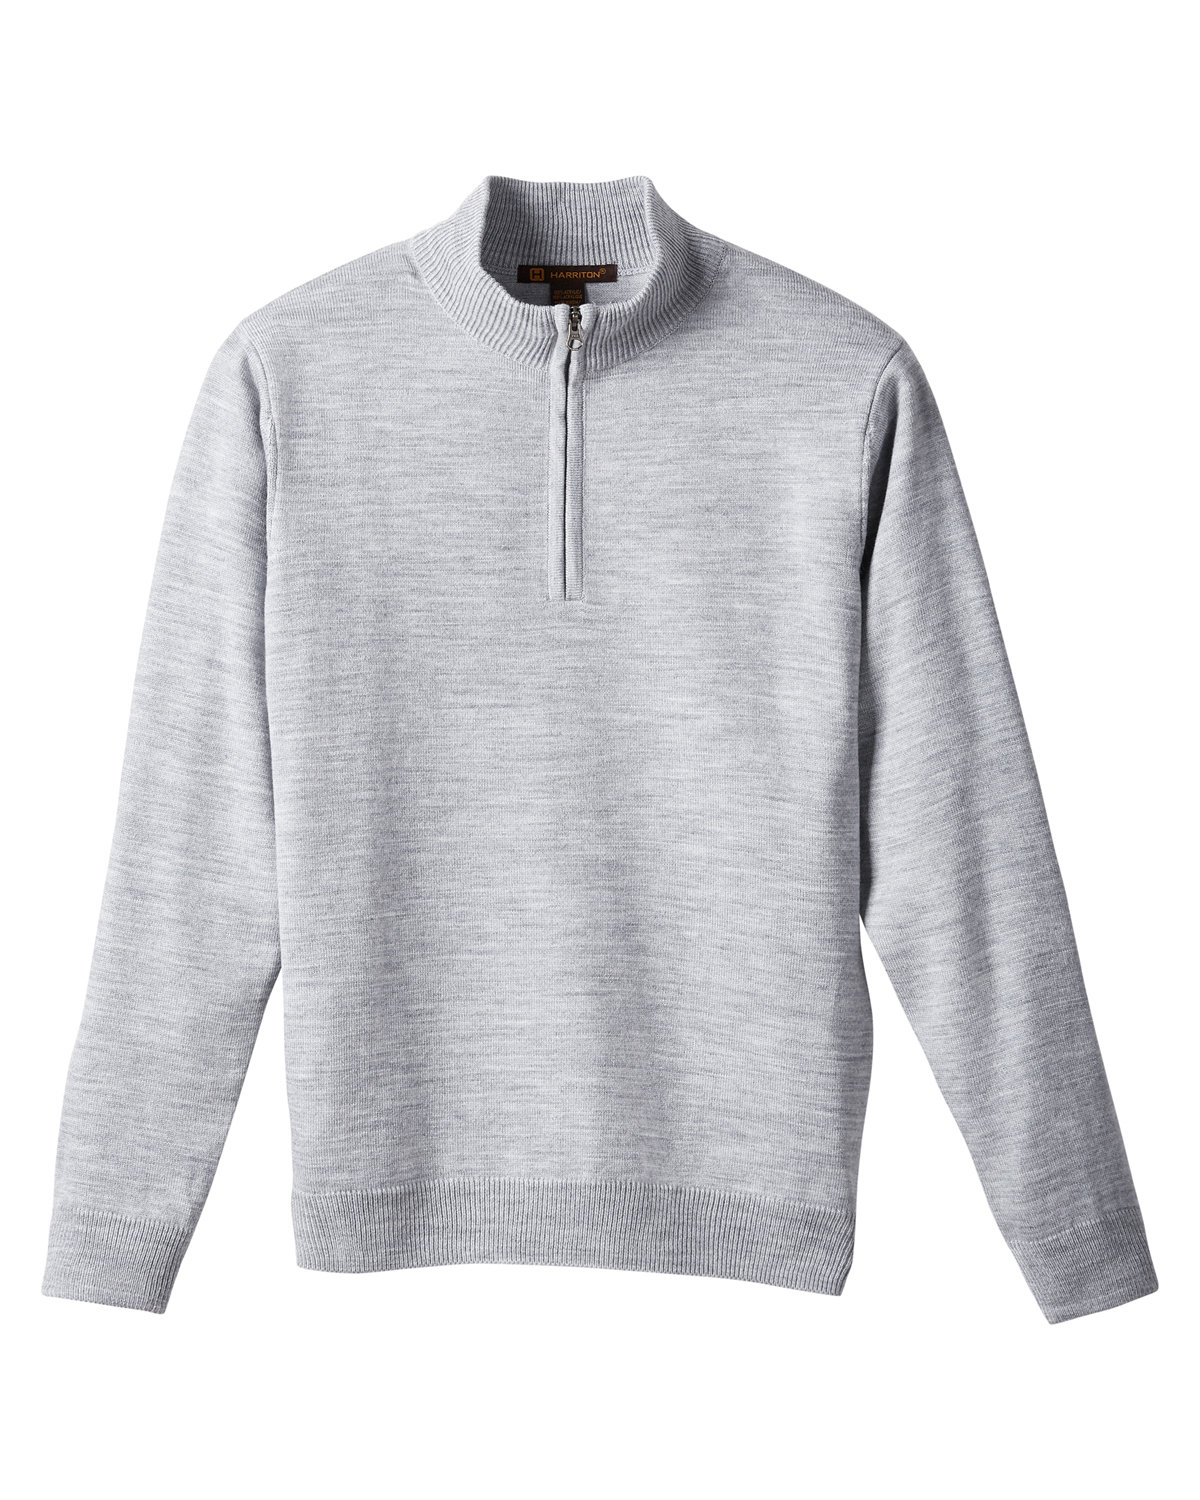 Harriton Unisex Pilbloc™ Quarter-Zip Sweater | alphabroder